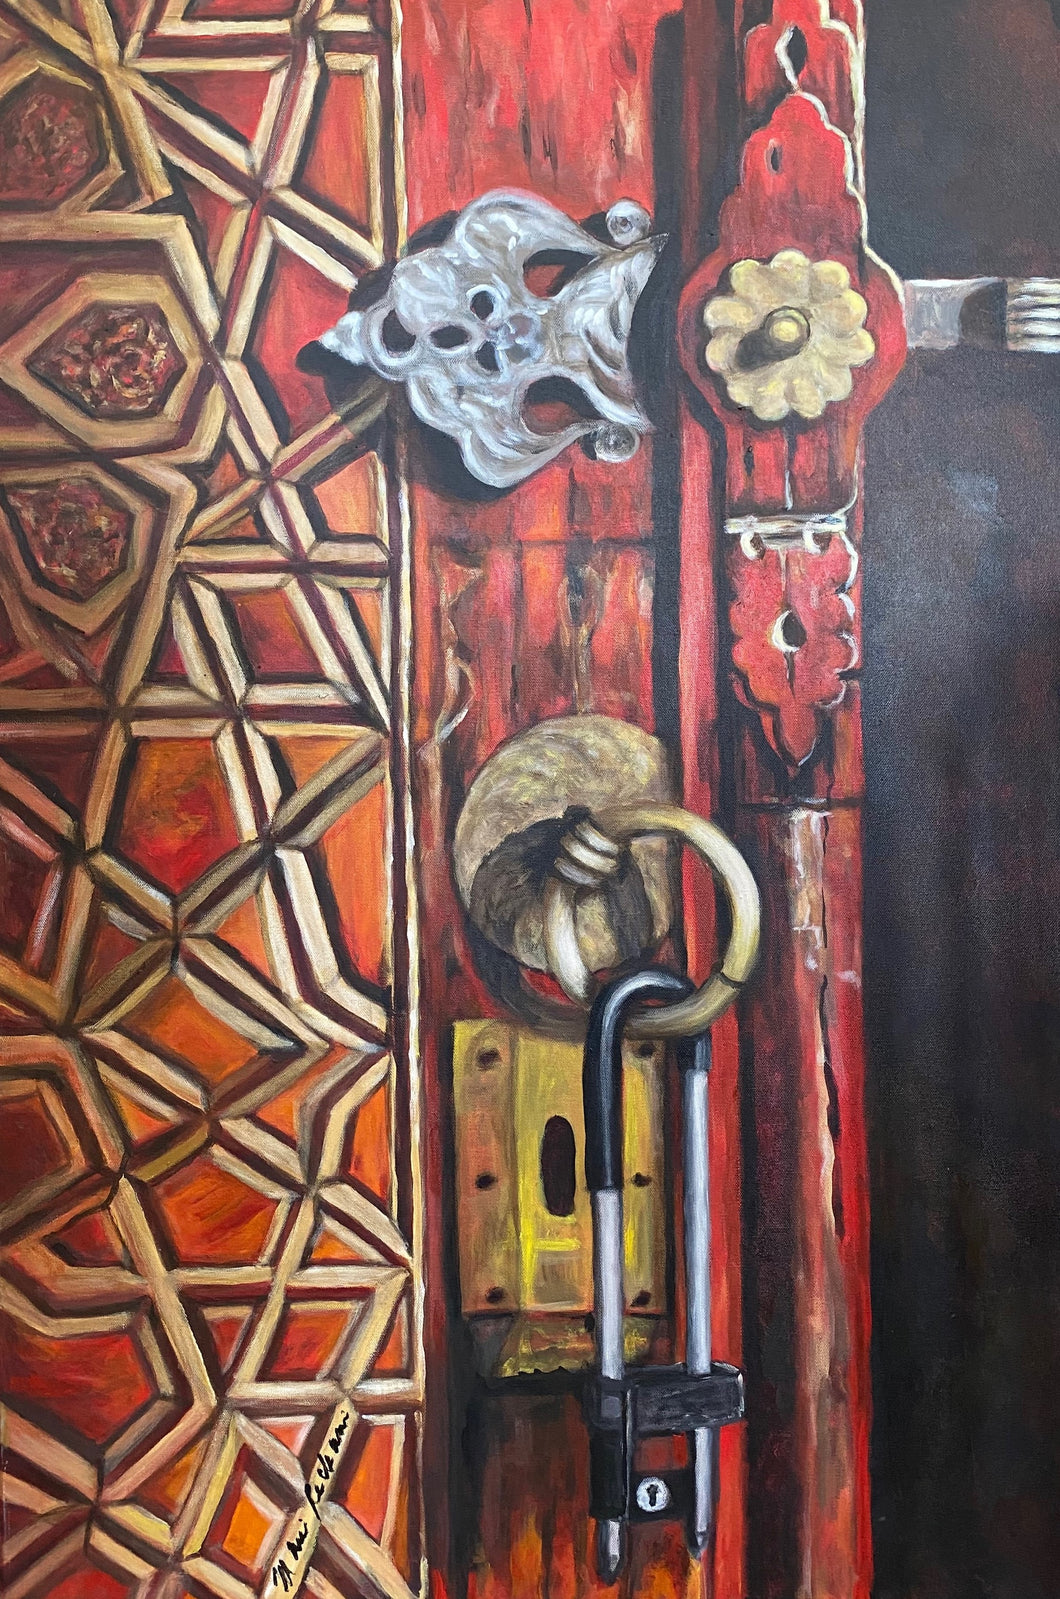 Puerta- Door